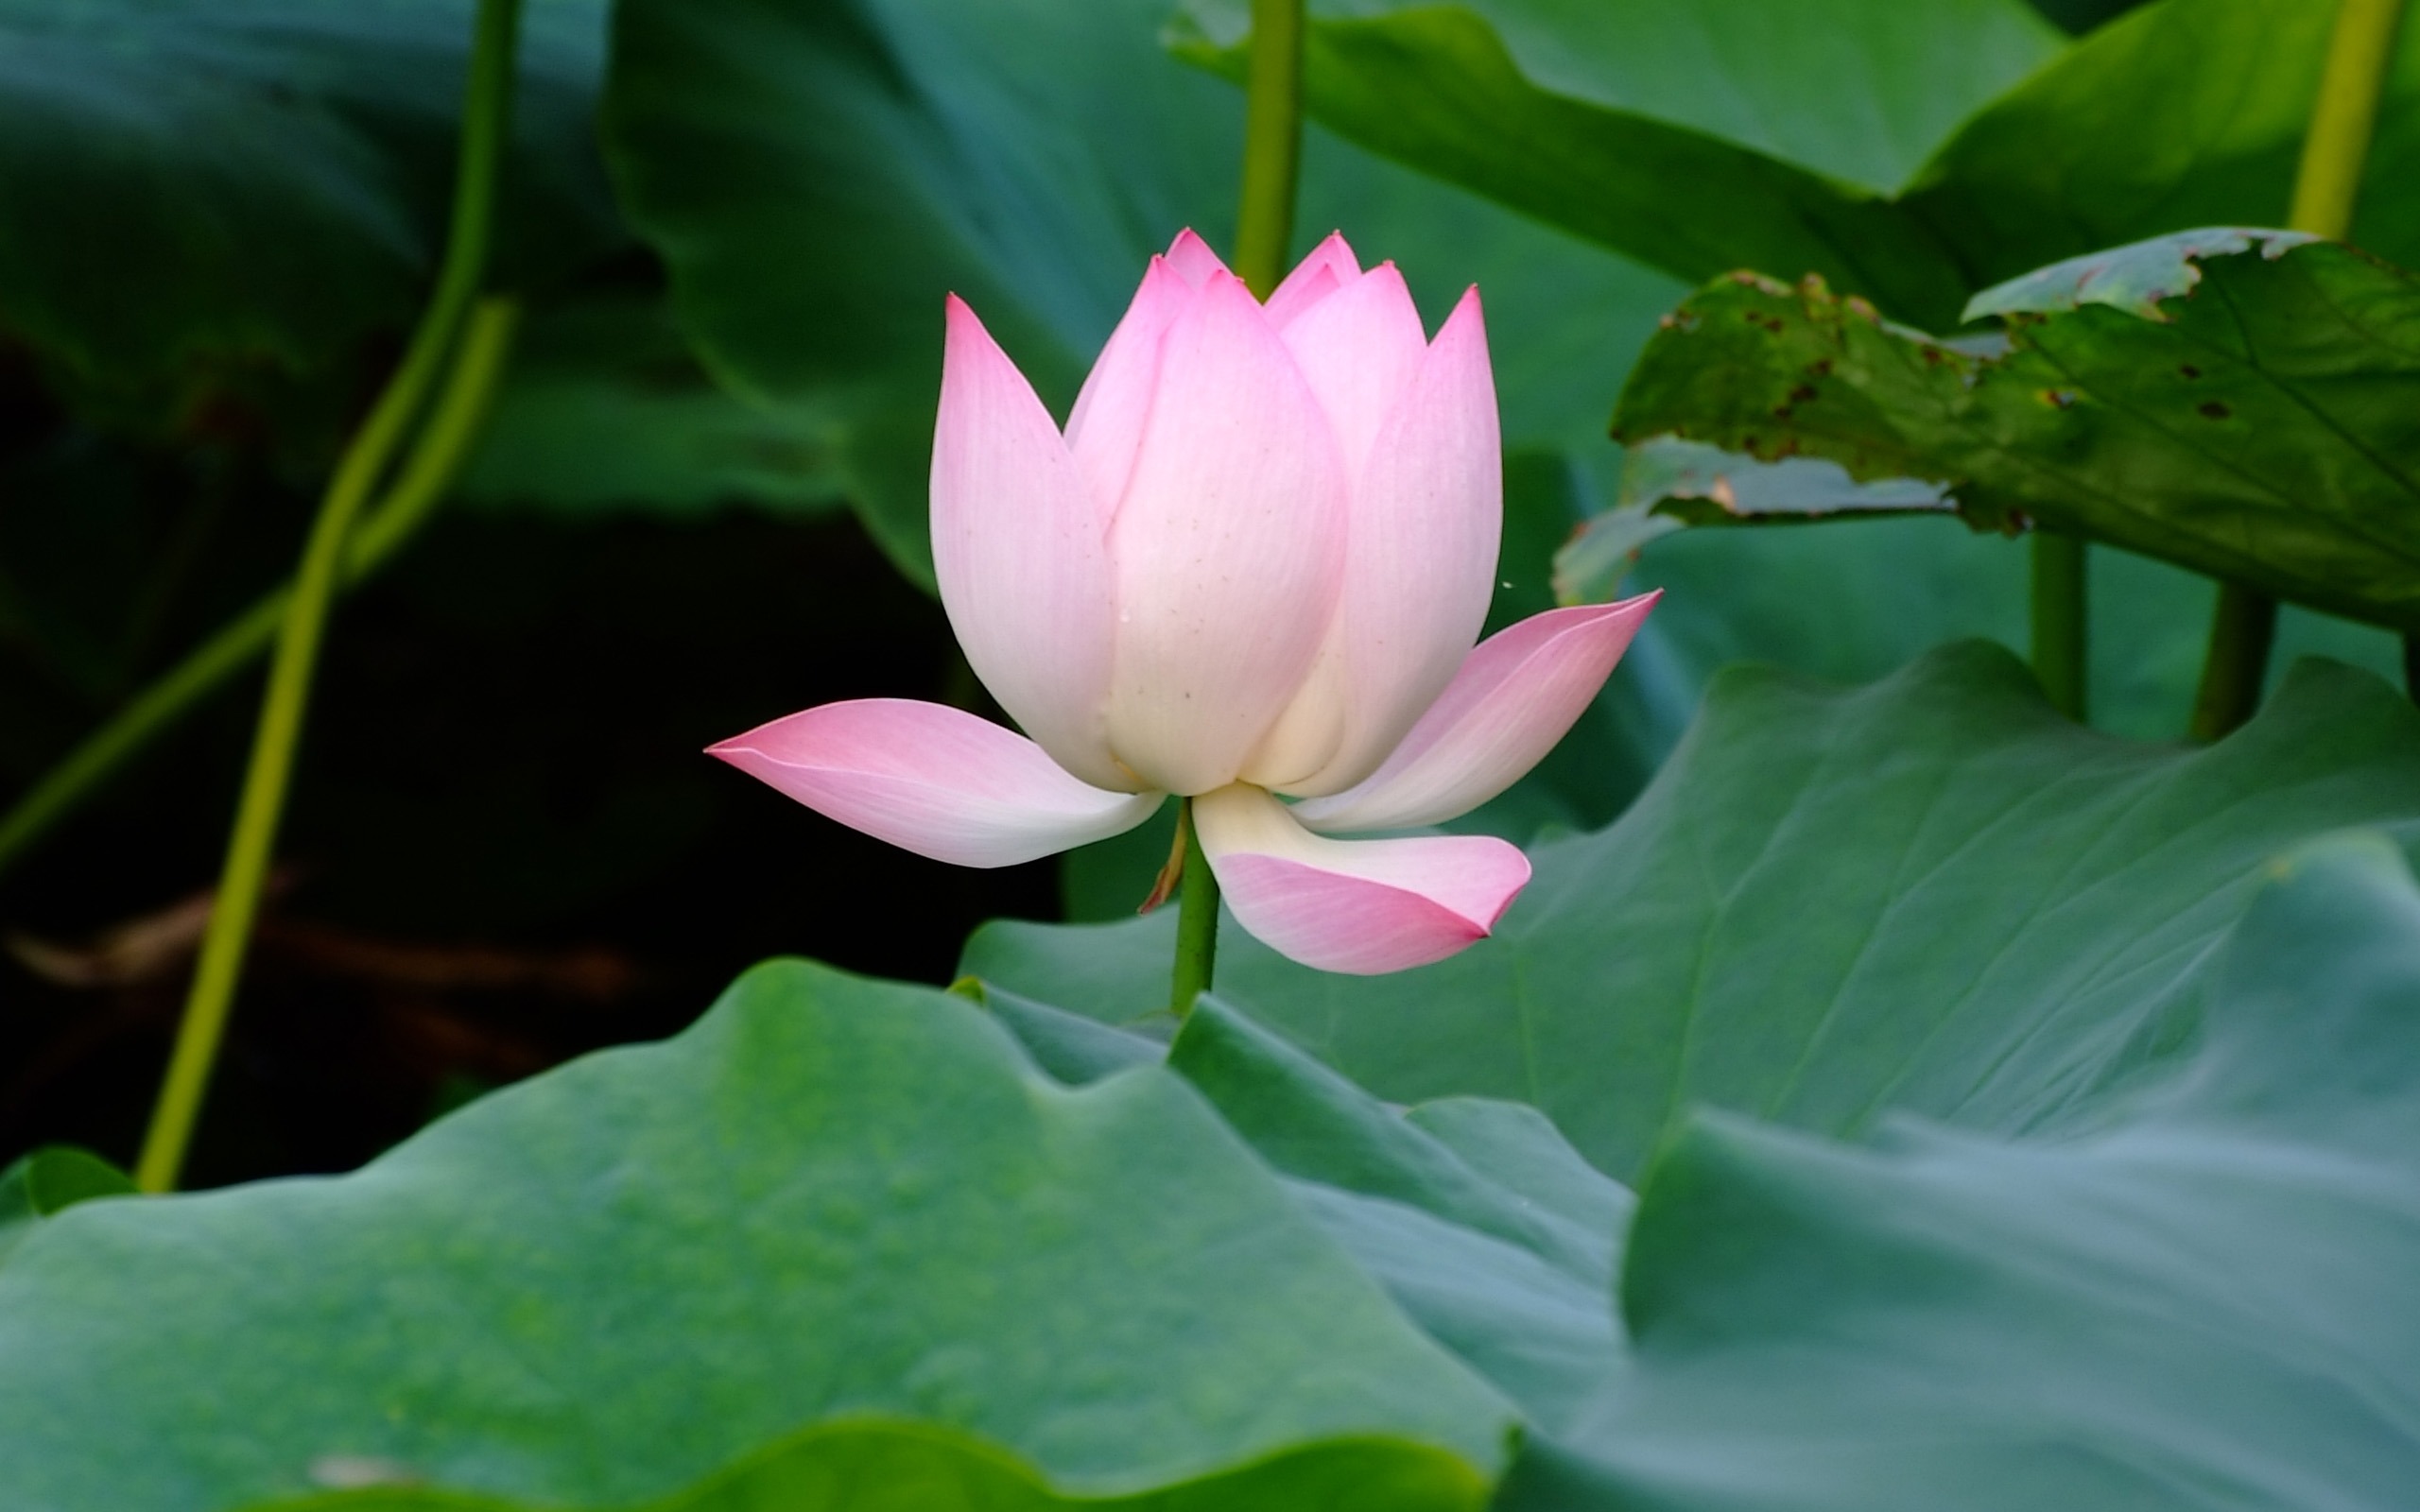 Rose Garden of the Lotus (rebar works) #4 - 2560x1600